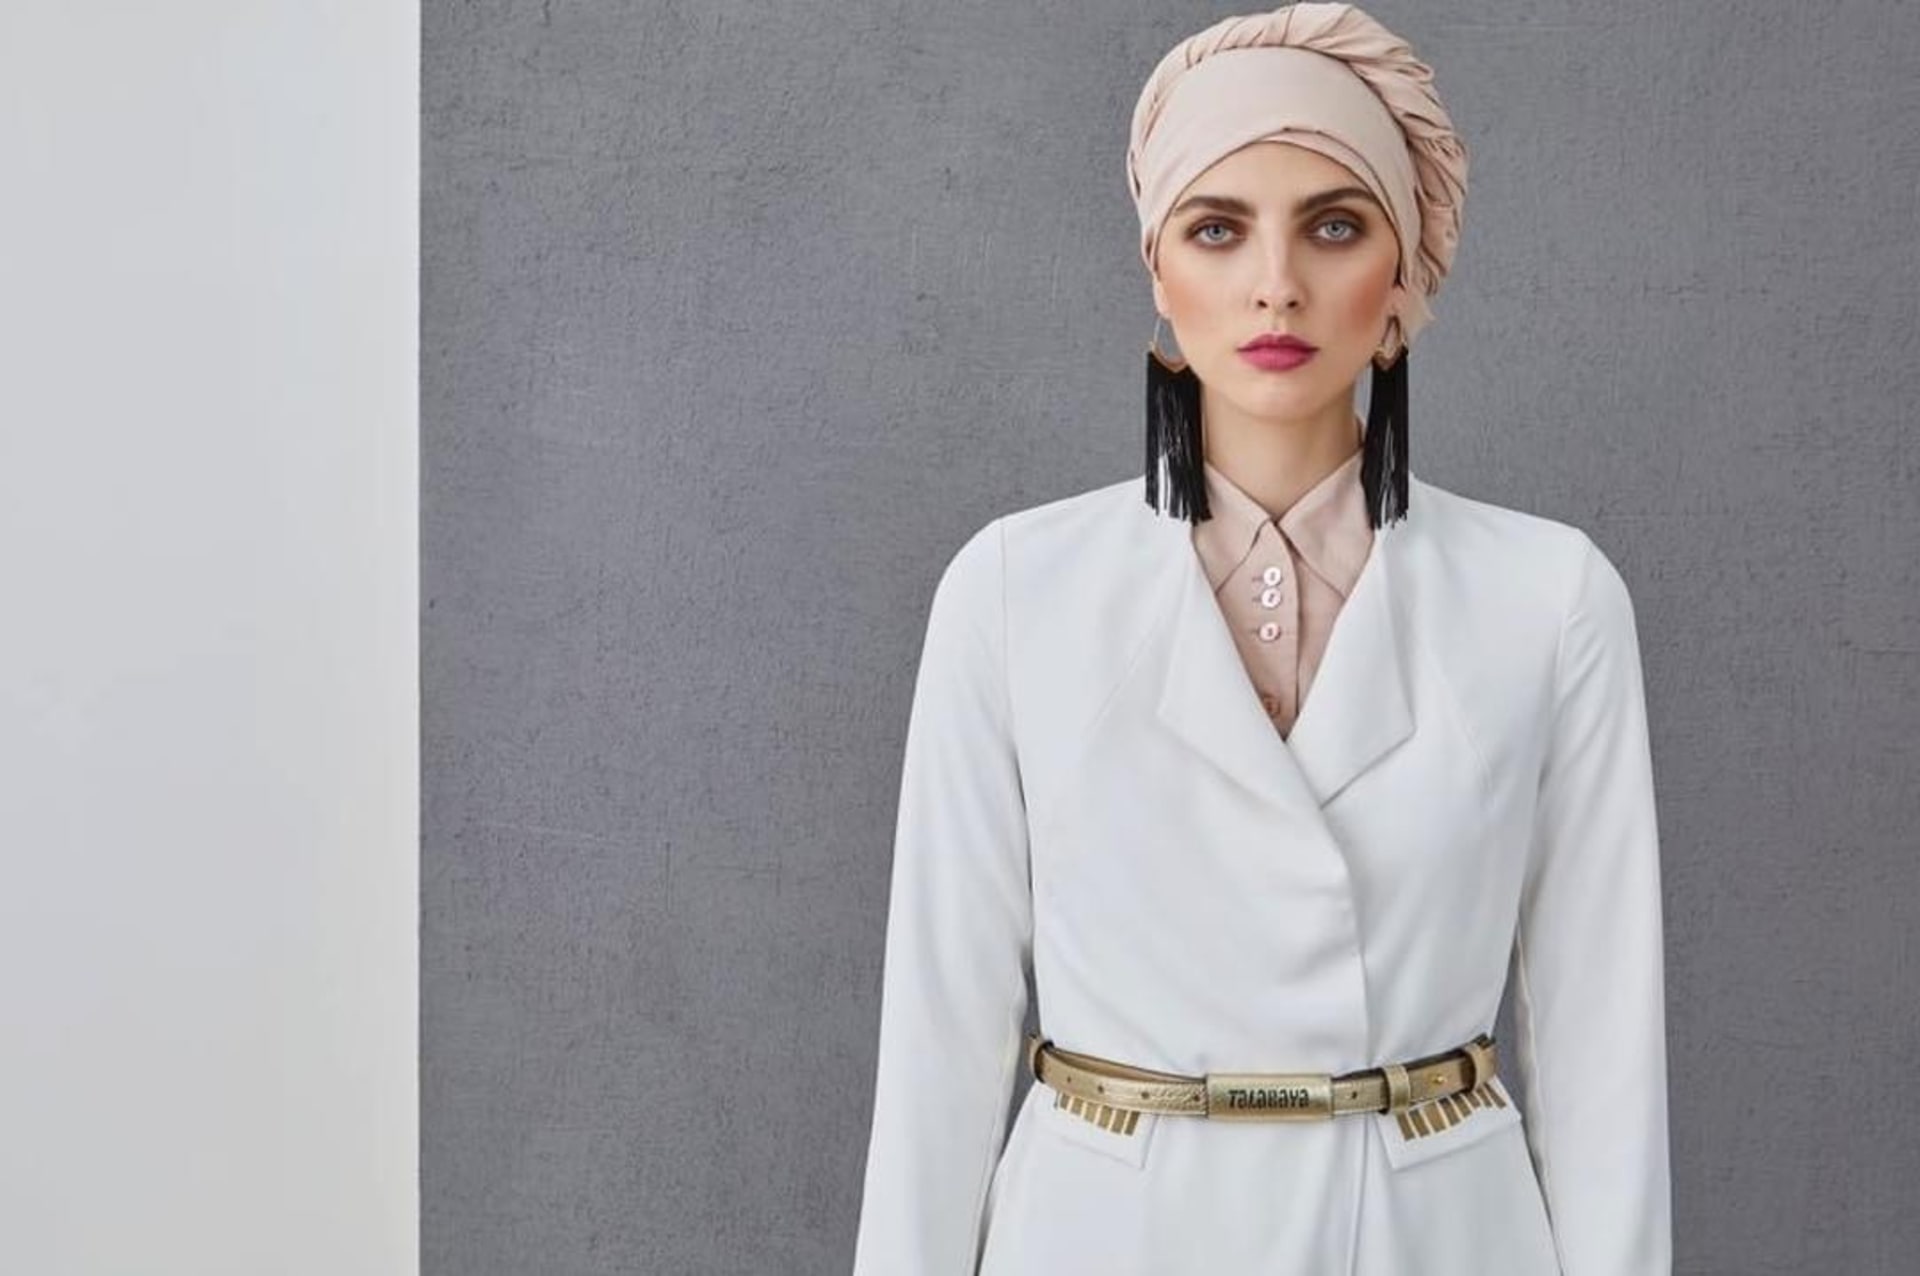 Životní styl se v arabských zemích uvolňuje a mladé ženy se pomalu začínají inspirovat evropským stylem oblékání.